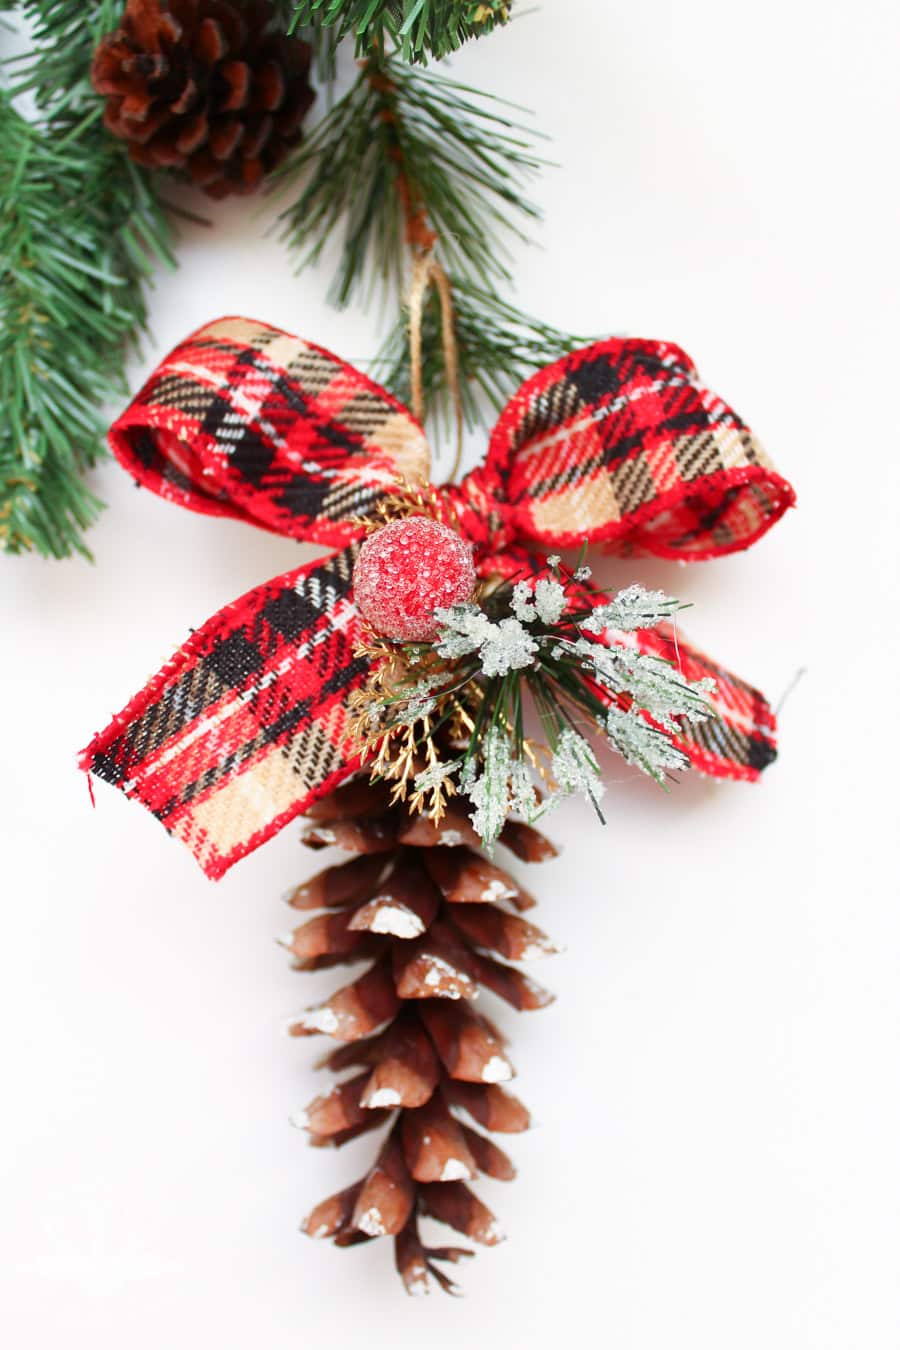 DIY Pine Cone Ornaments